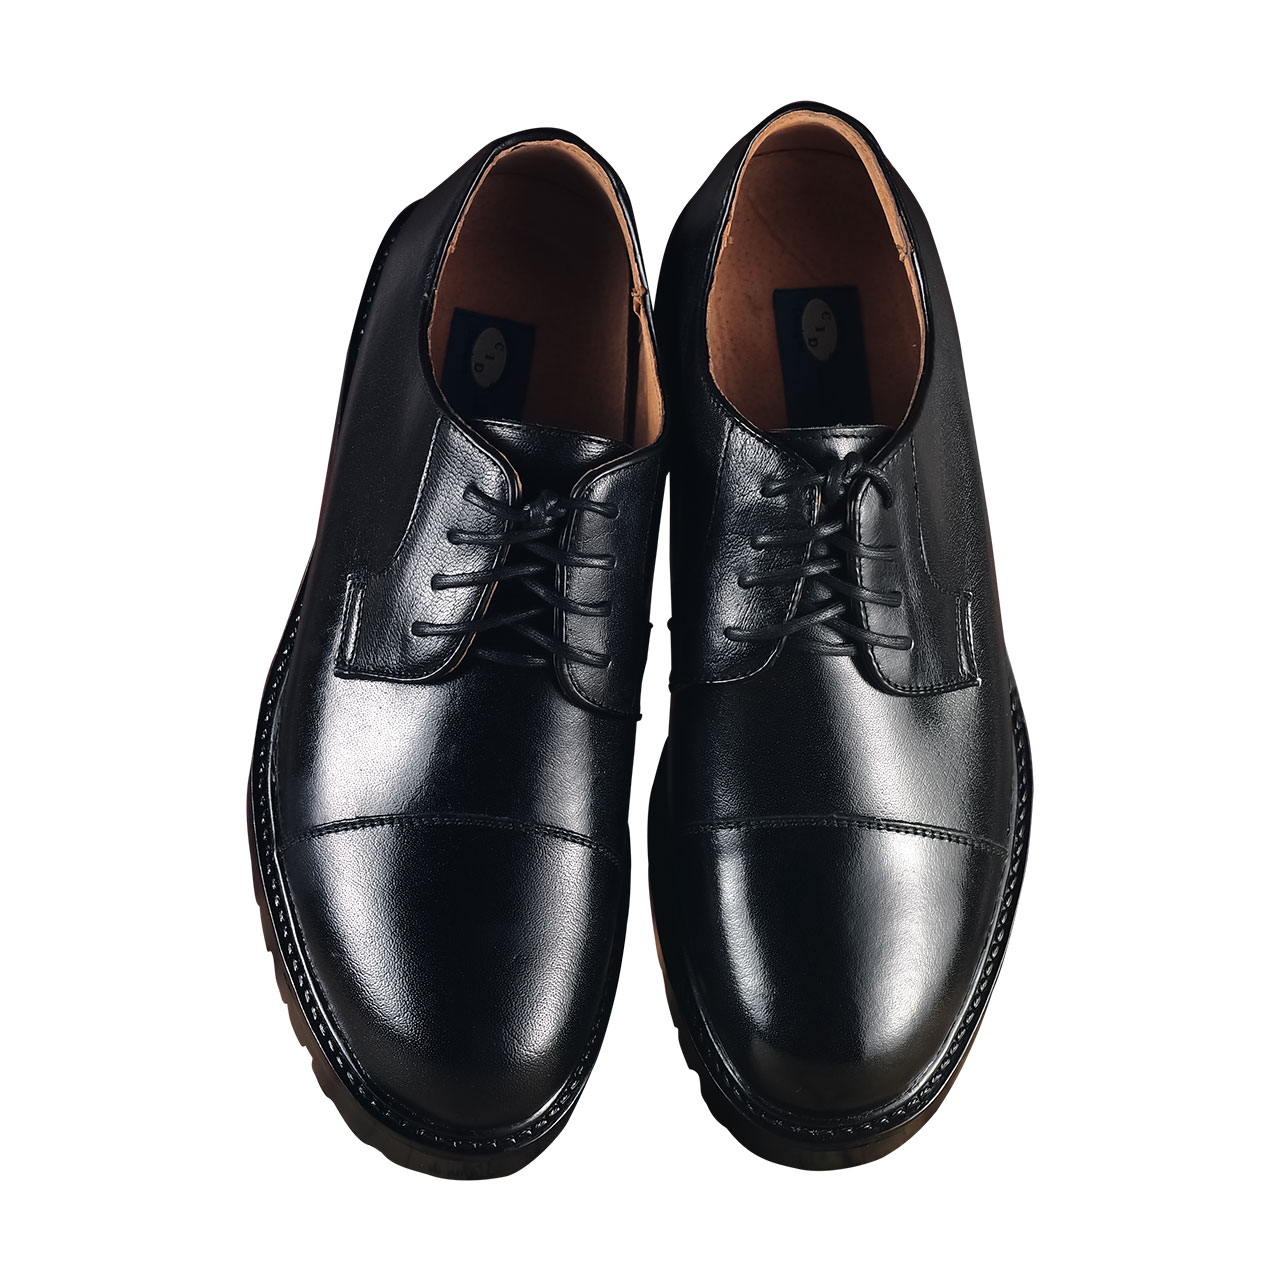 Men's Classic Oxford Plain Cap Toe Lace Up Brogue Genuine Leather Shoe - Black